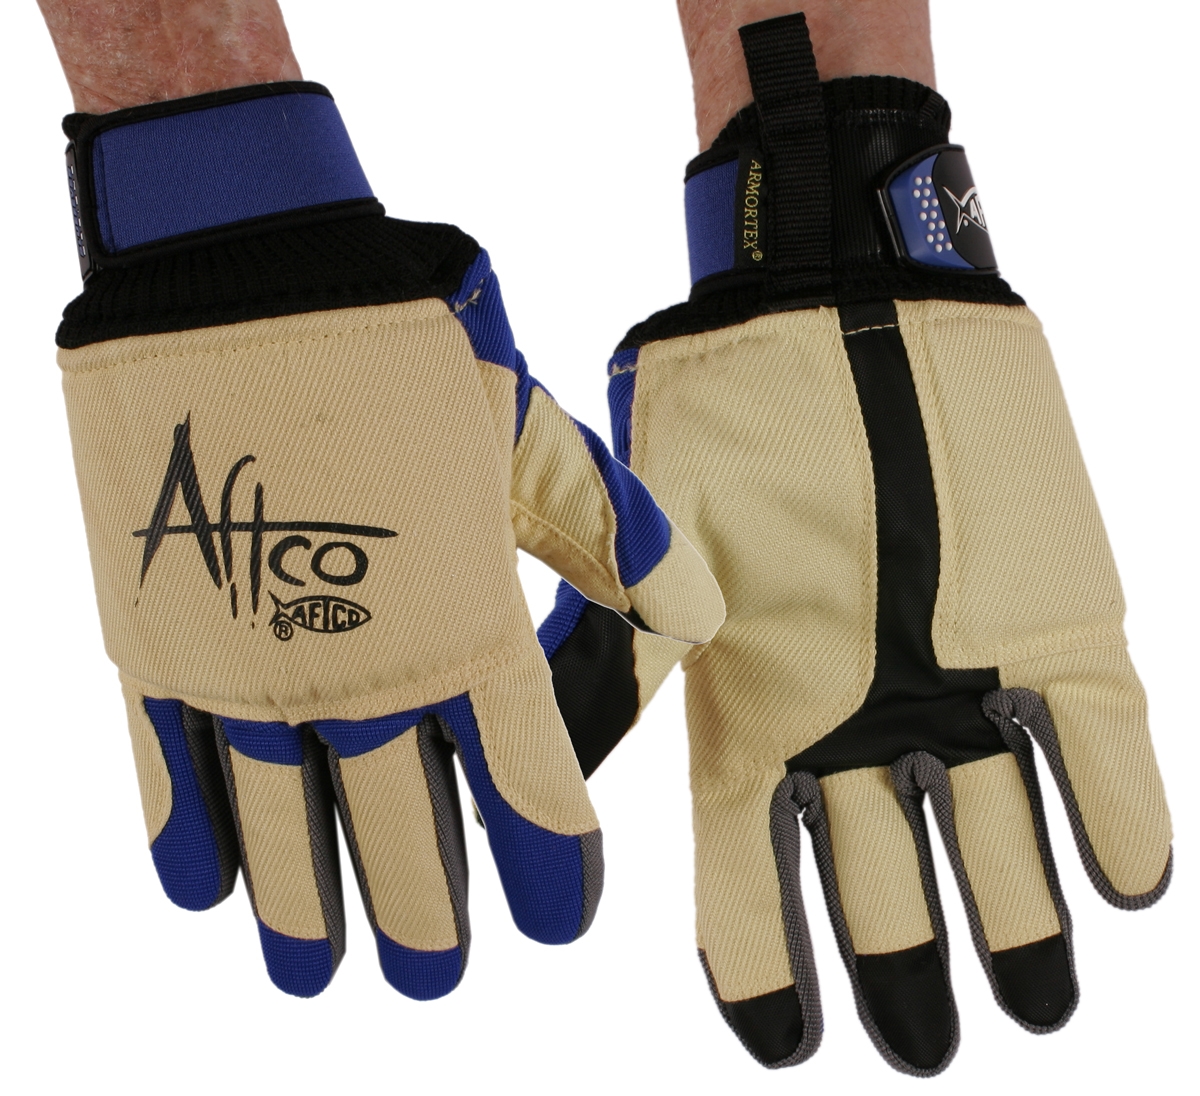  Fishing Gloves - AFTCO / Fishing Gloves / Fishing